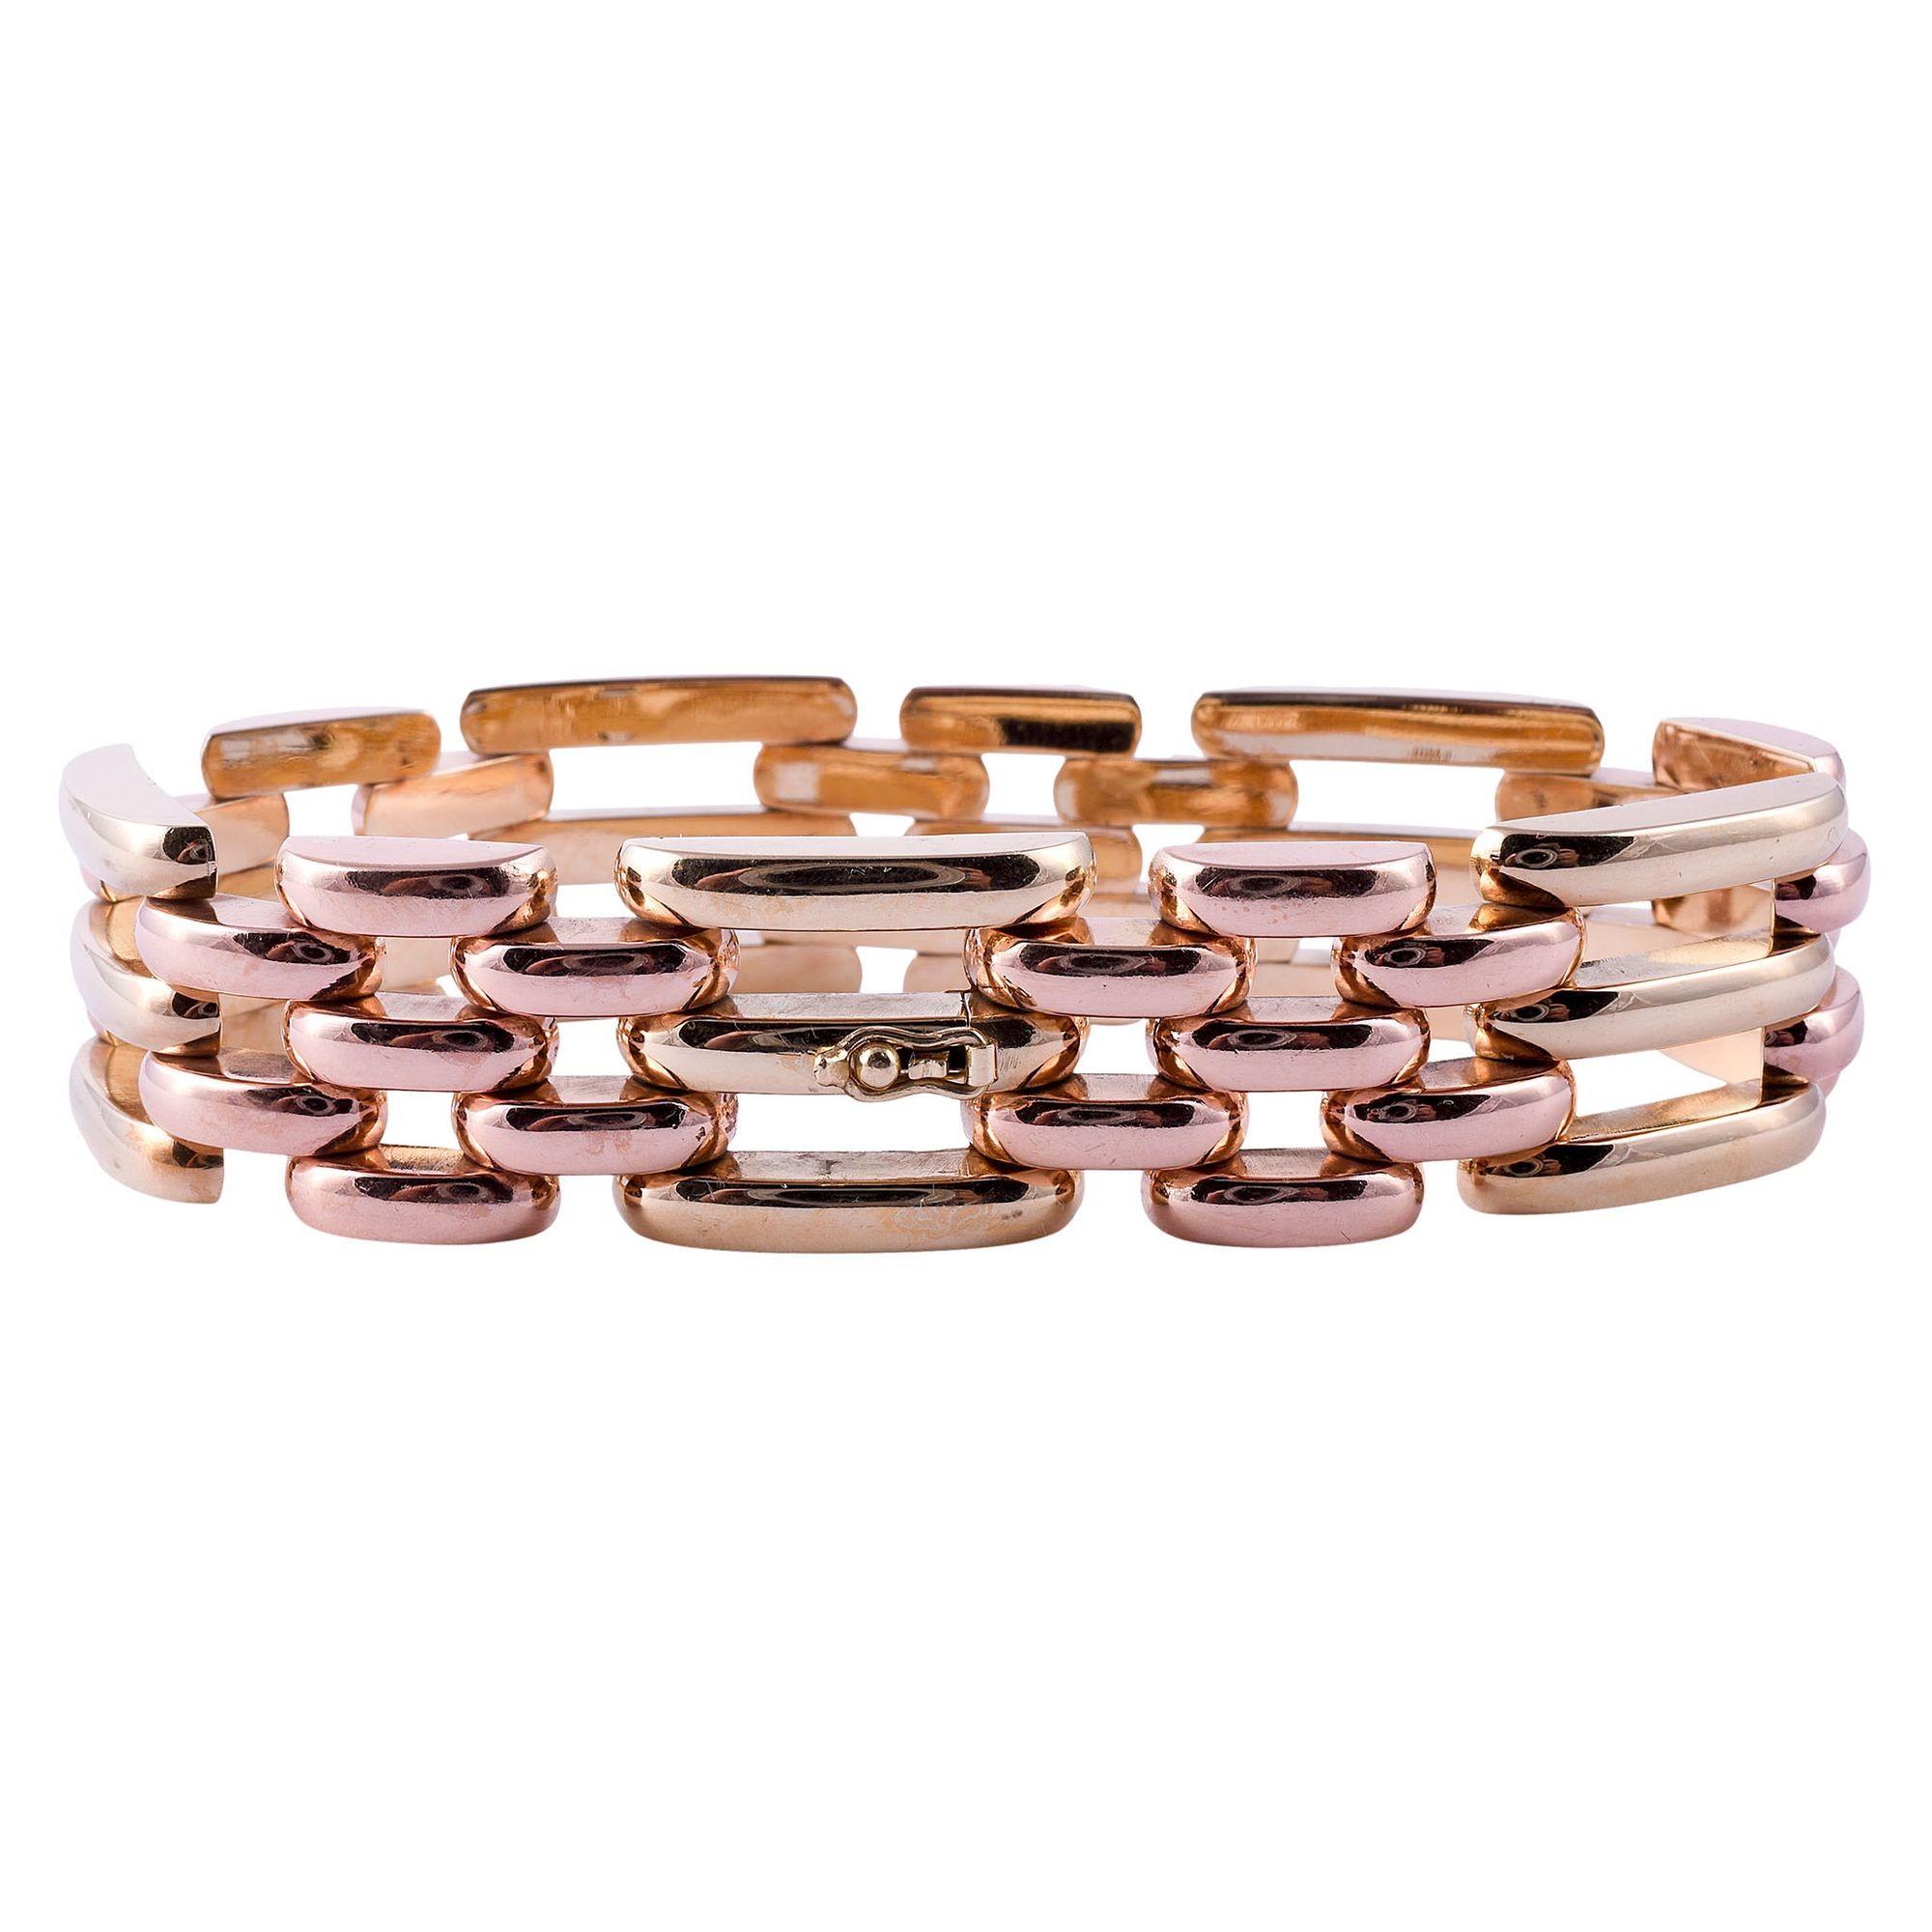 Bracelet estate en or rose et jaune. Ce bracelet de style rétro est réalisé en or rose et jaune 14 carats. [KIMH 582]

Dimensions
7.125